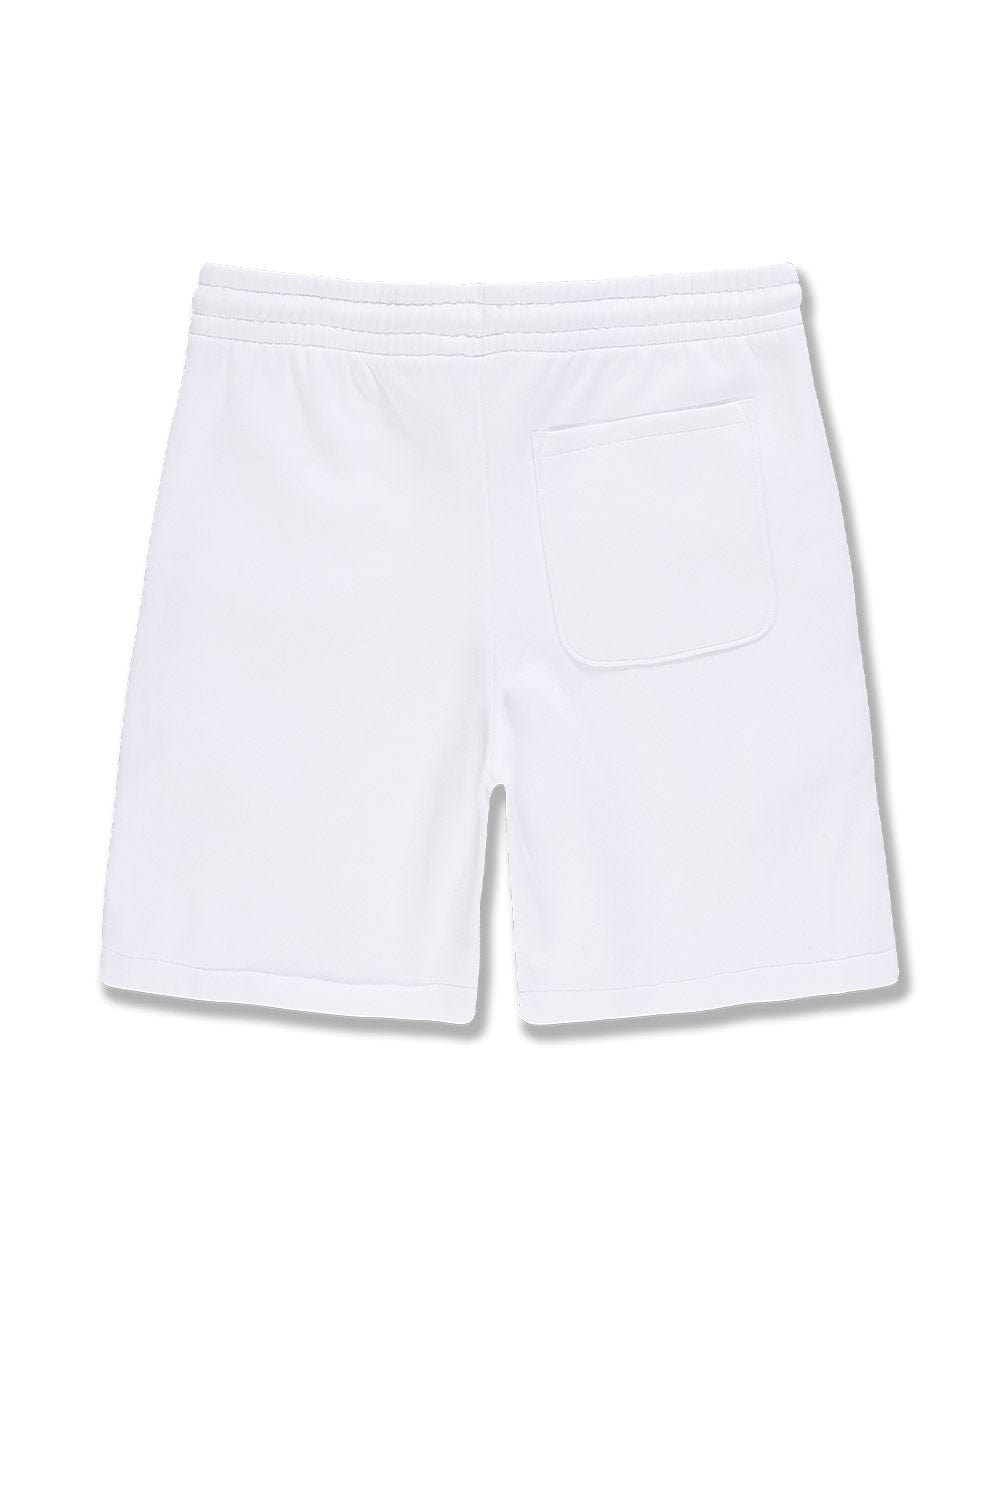 JC Big Men Big Men's Retro Paradise Tonal Shorts (White)